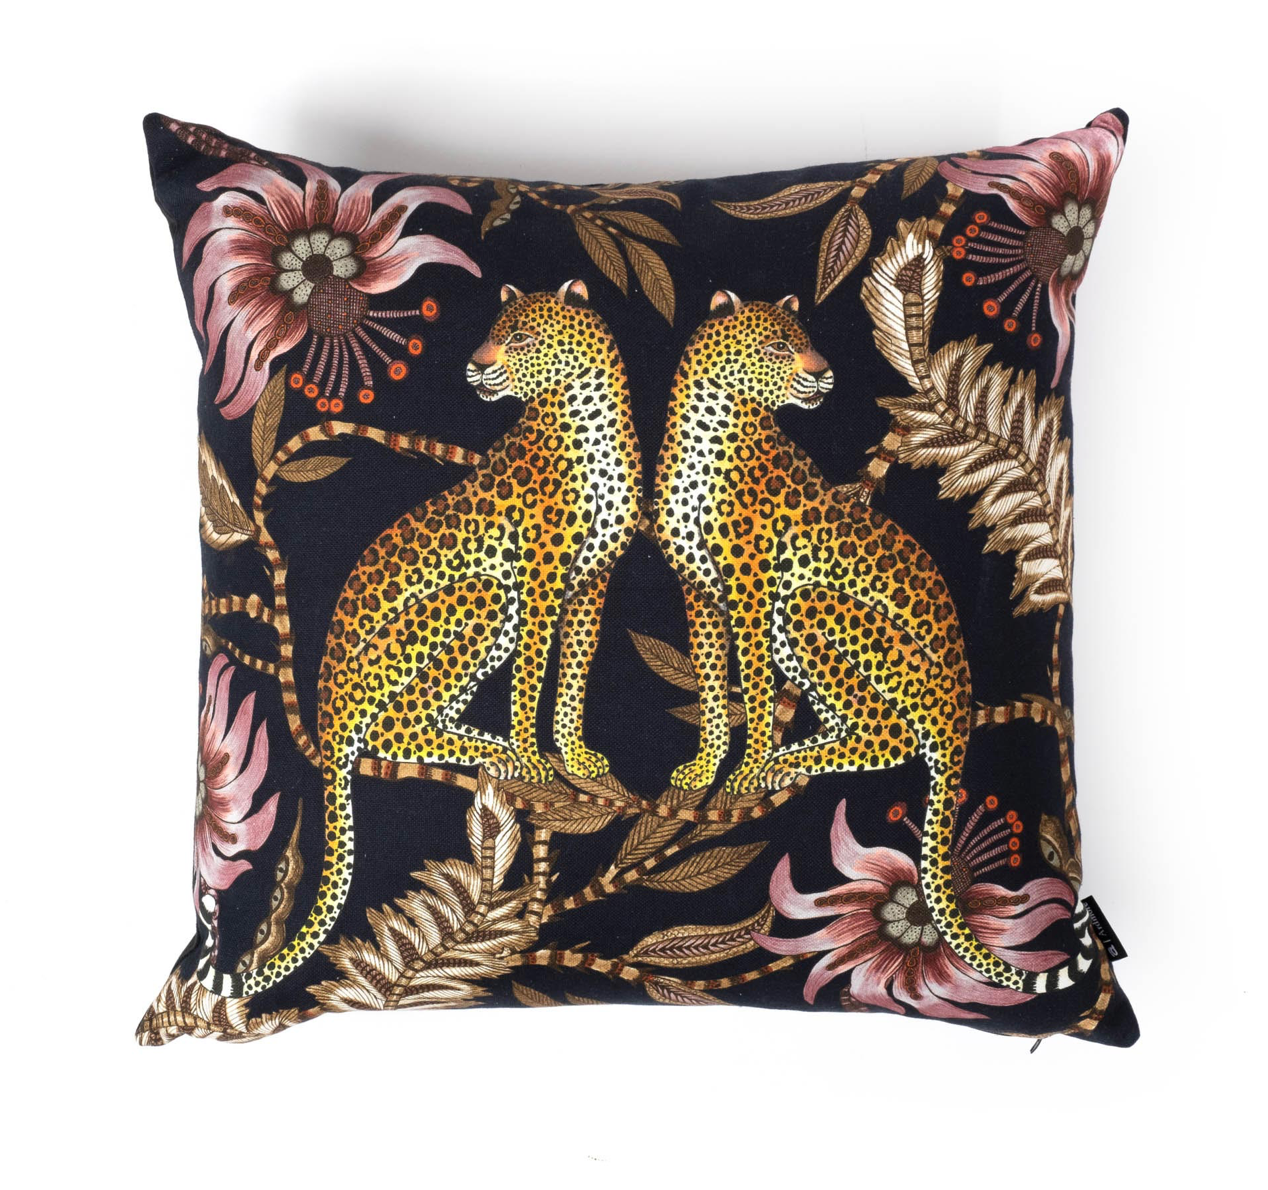 Ardmore Lovebird Leopard silk pillows from South Africa